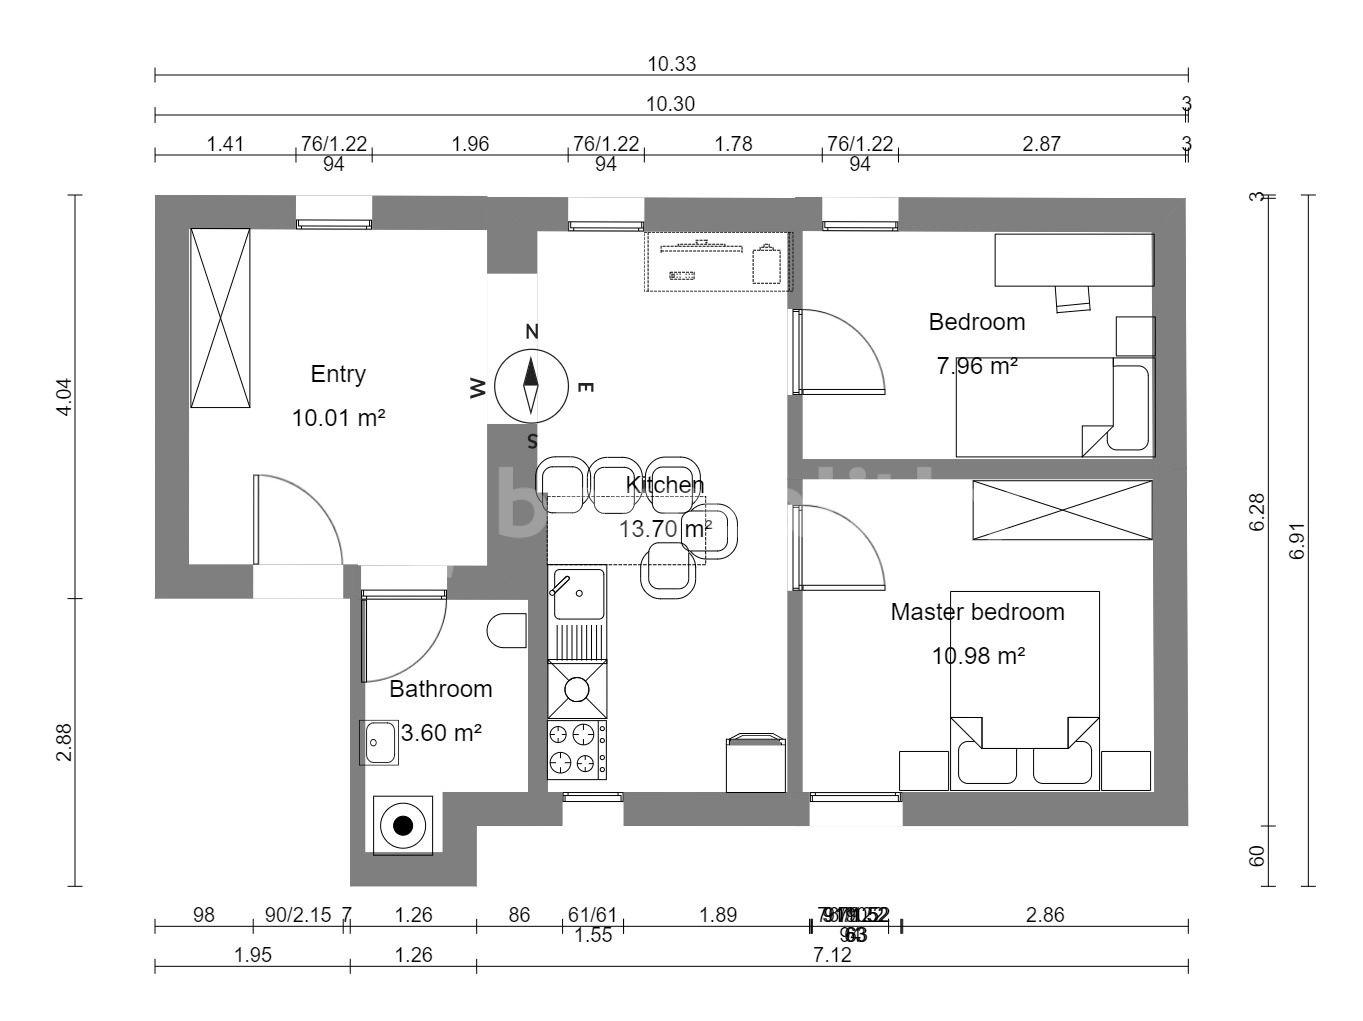 2 bedroom with open-plan kitchen flat to rent, 60 m², Pražská, Unhošť, Středočeský Region